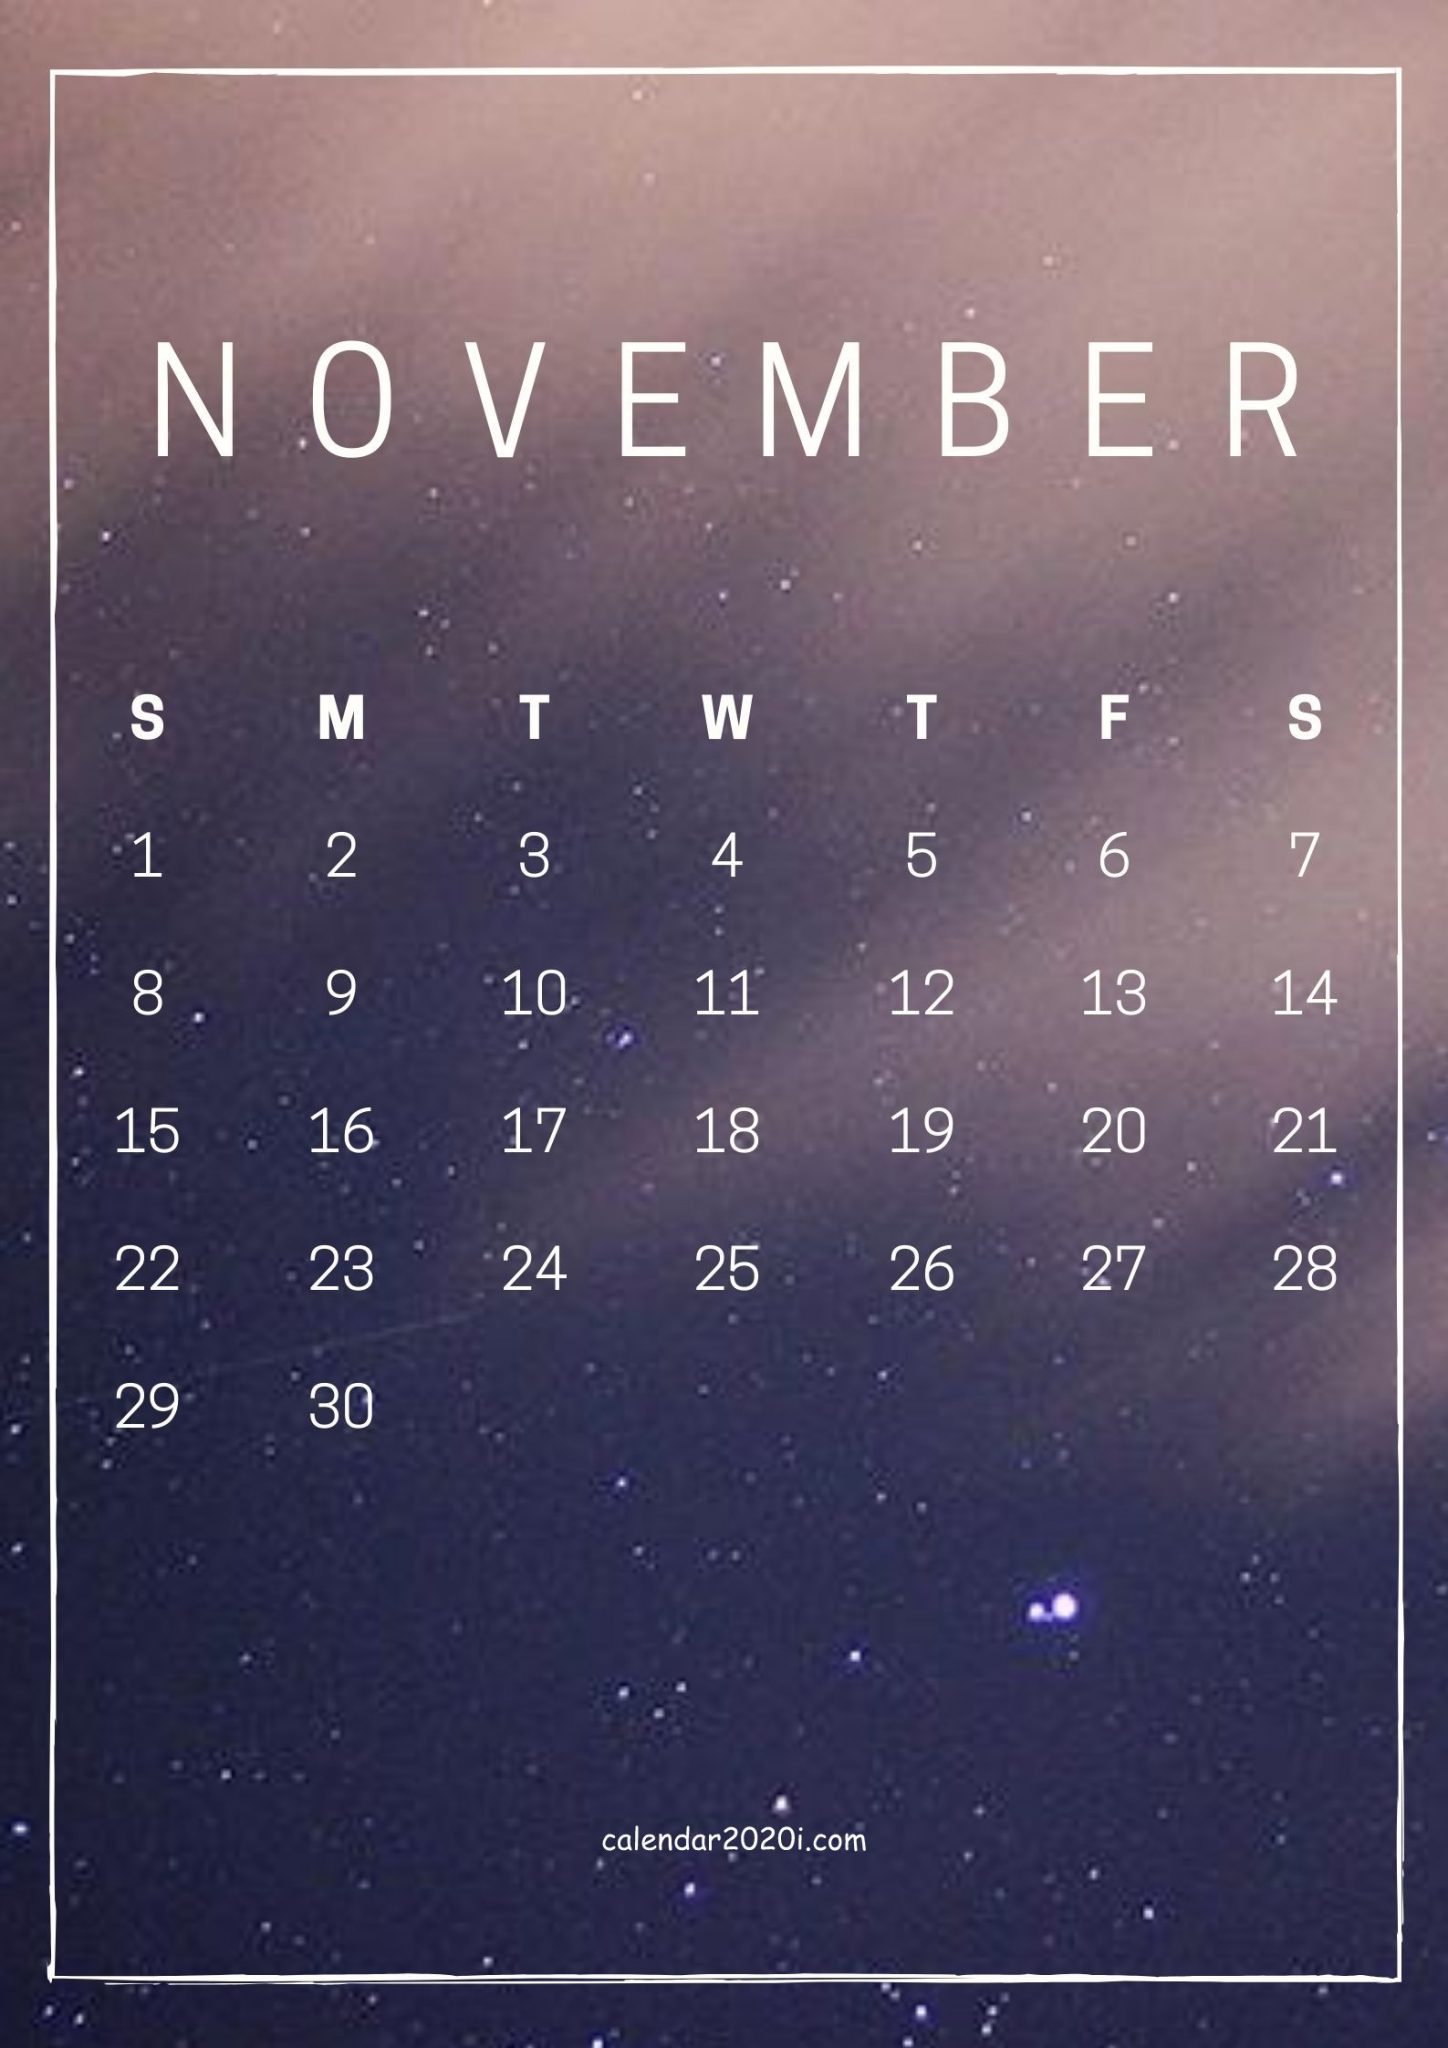 November 2020 Mobile Calendar Wallpaper